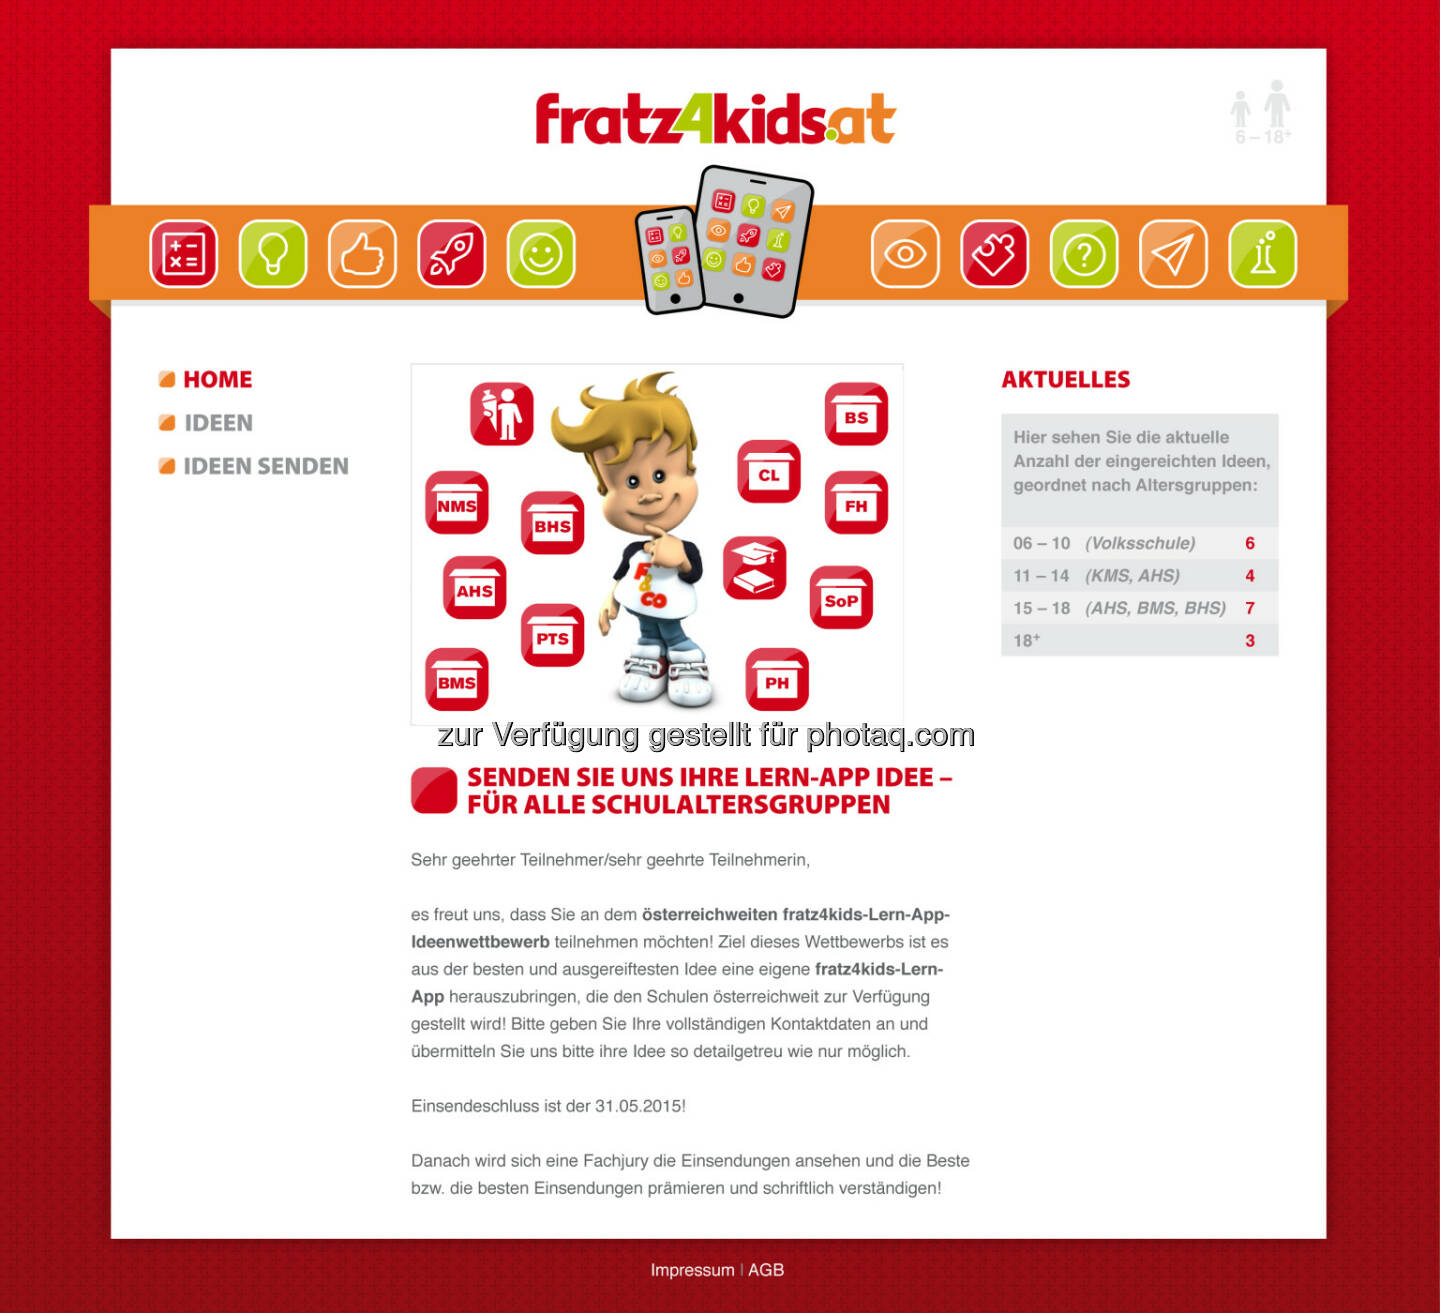 fratz4kids ist die innovative neue Plattform von den besten Köpfen Österreichs für die besten Lehrer und Schüler Österreichs  Digitales unterrichten mit Hilfe von kreativen und neuen Lern-Apps (Bild: Zeit für Mich Verlag)